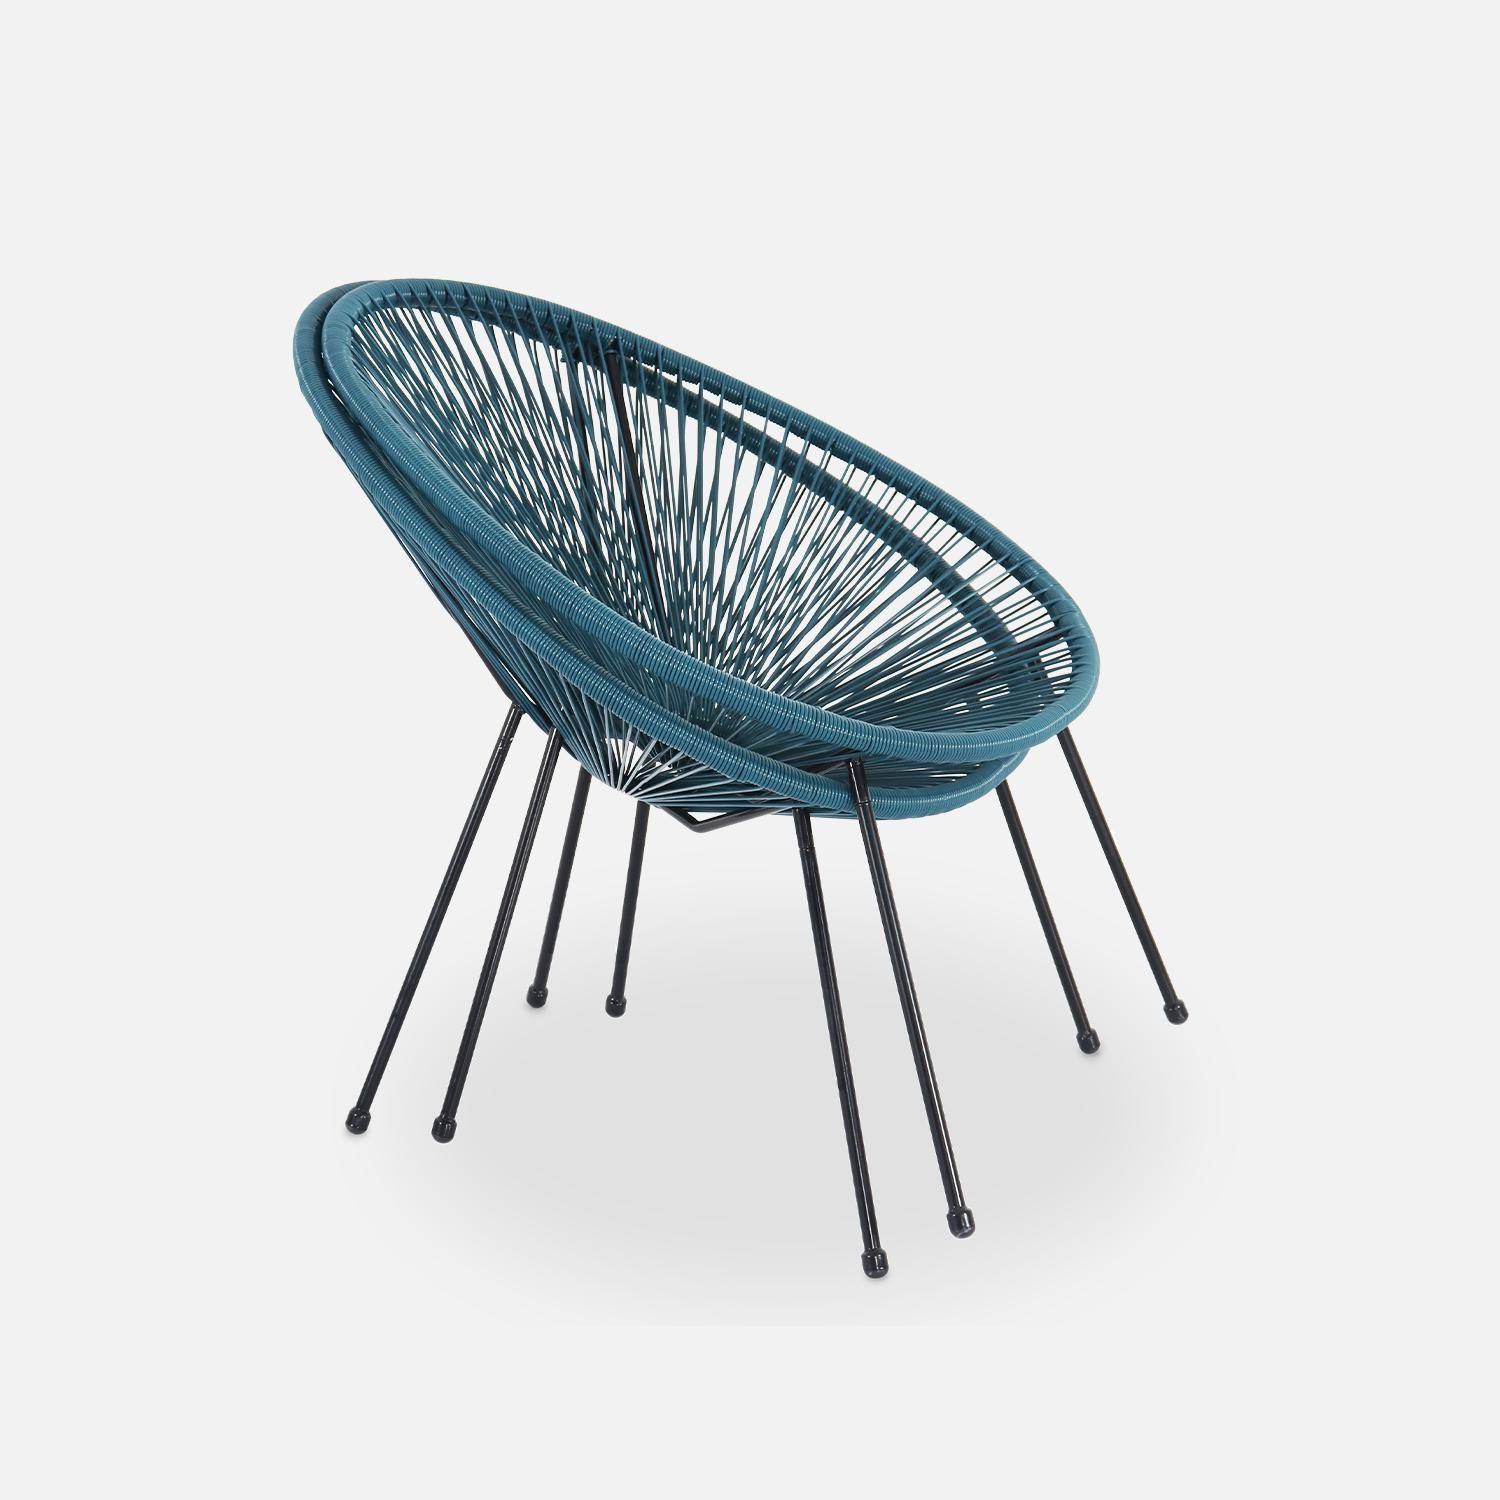 Lot de 2 fauteuils design Oeuf - Acapulco Bleu canard- Fauteuils 4 pieds design rétro, cordage plastique, intérieur / extérieur Photo6